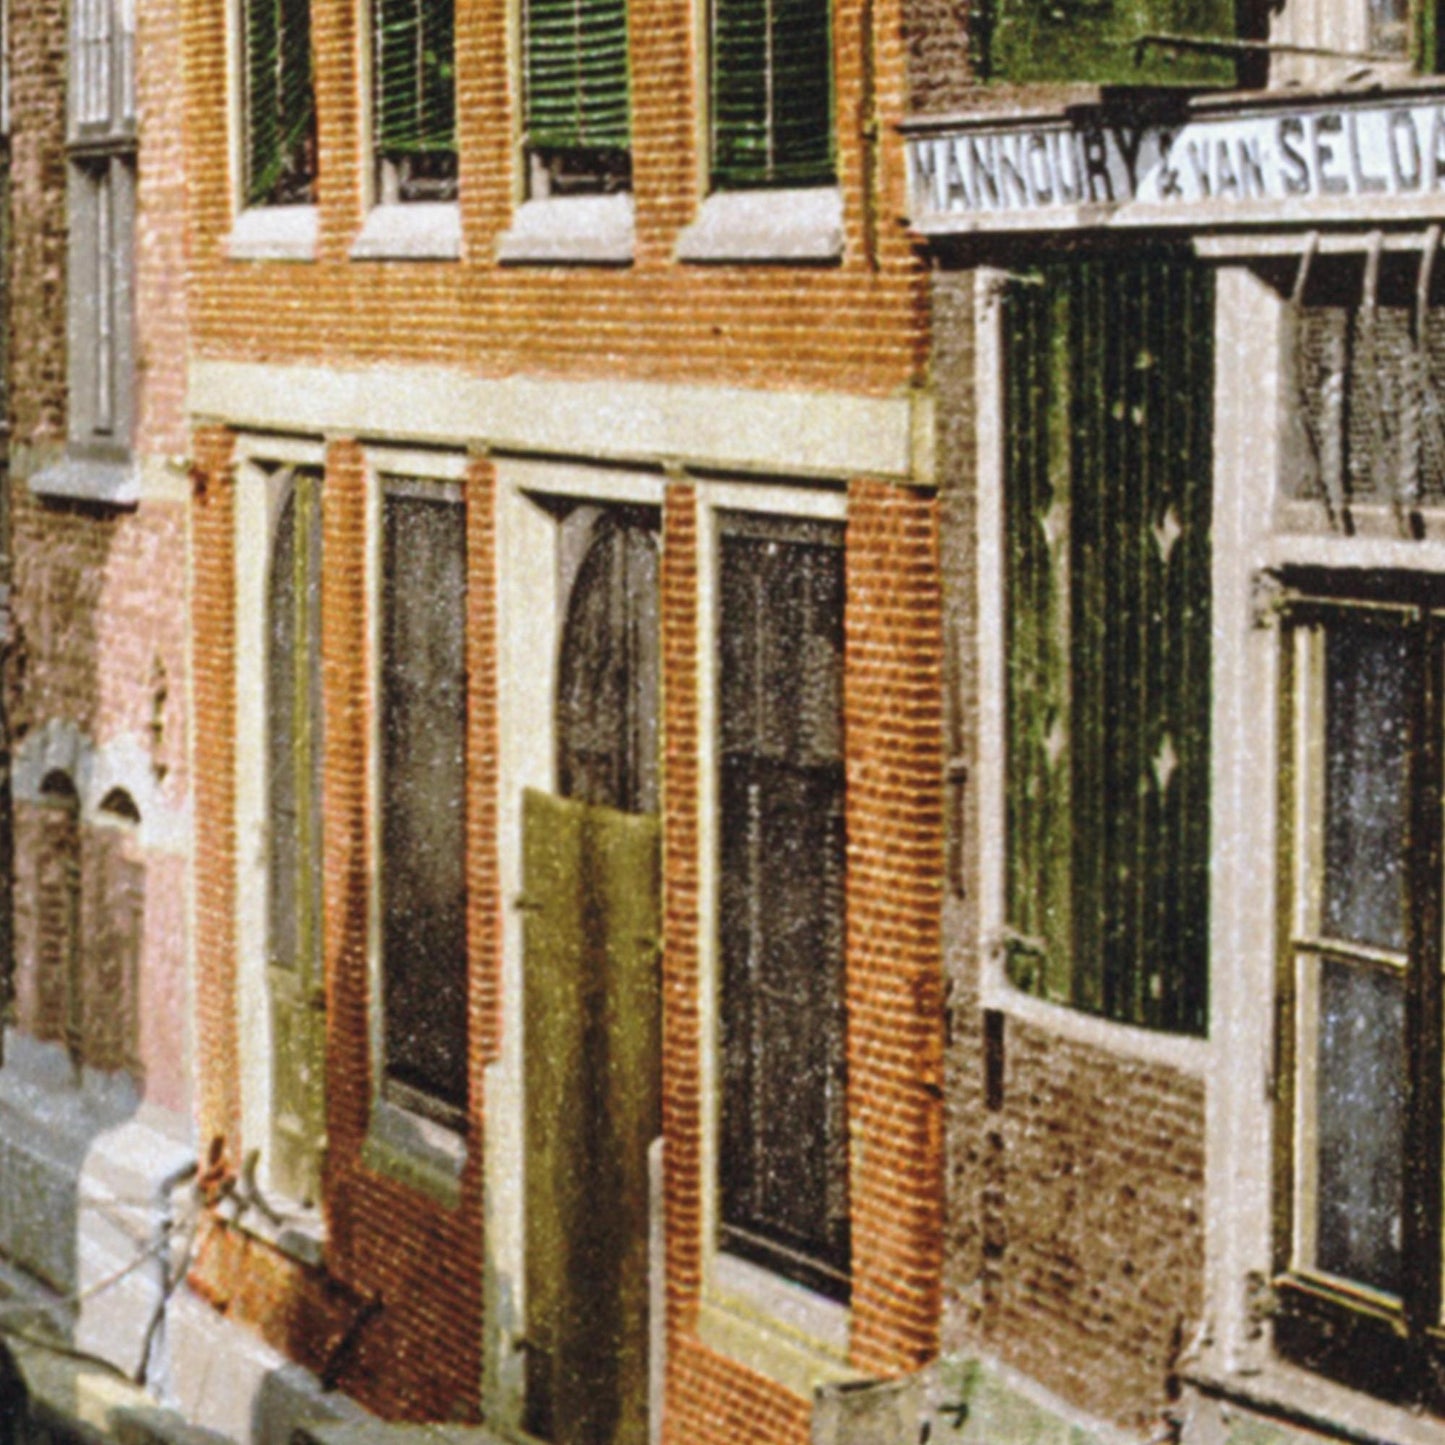 Historische Ansicht Amsterdam um 1895